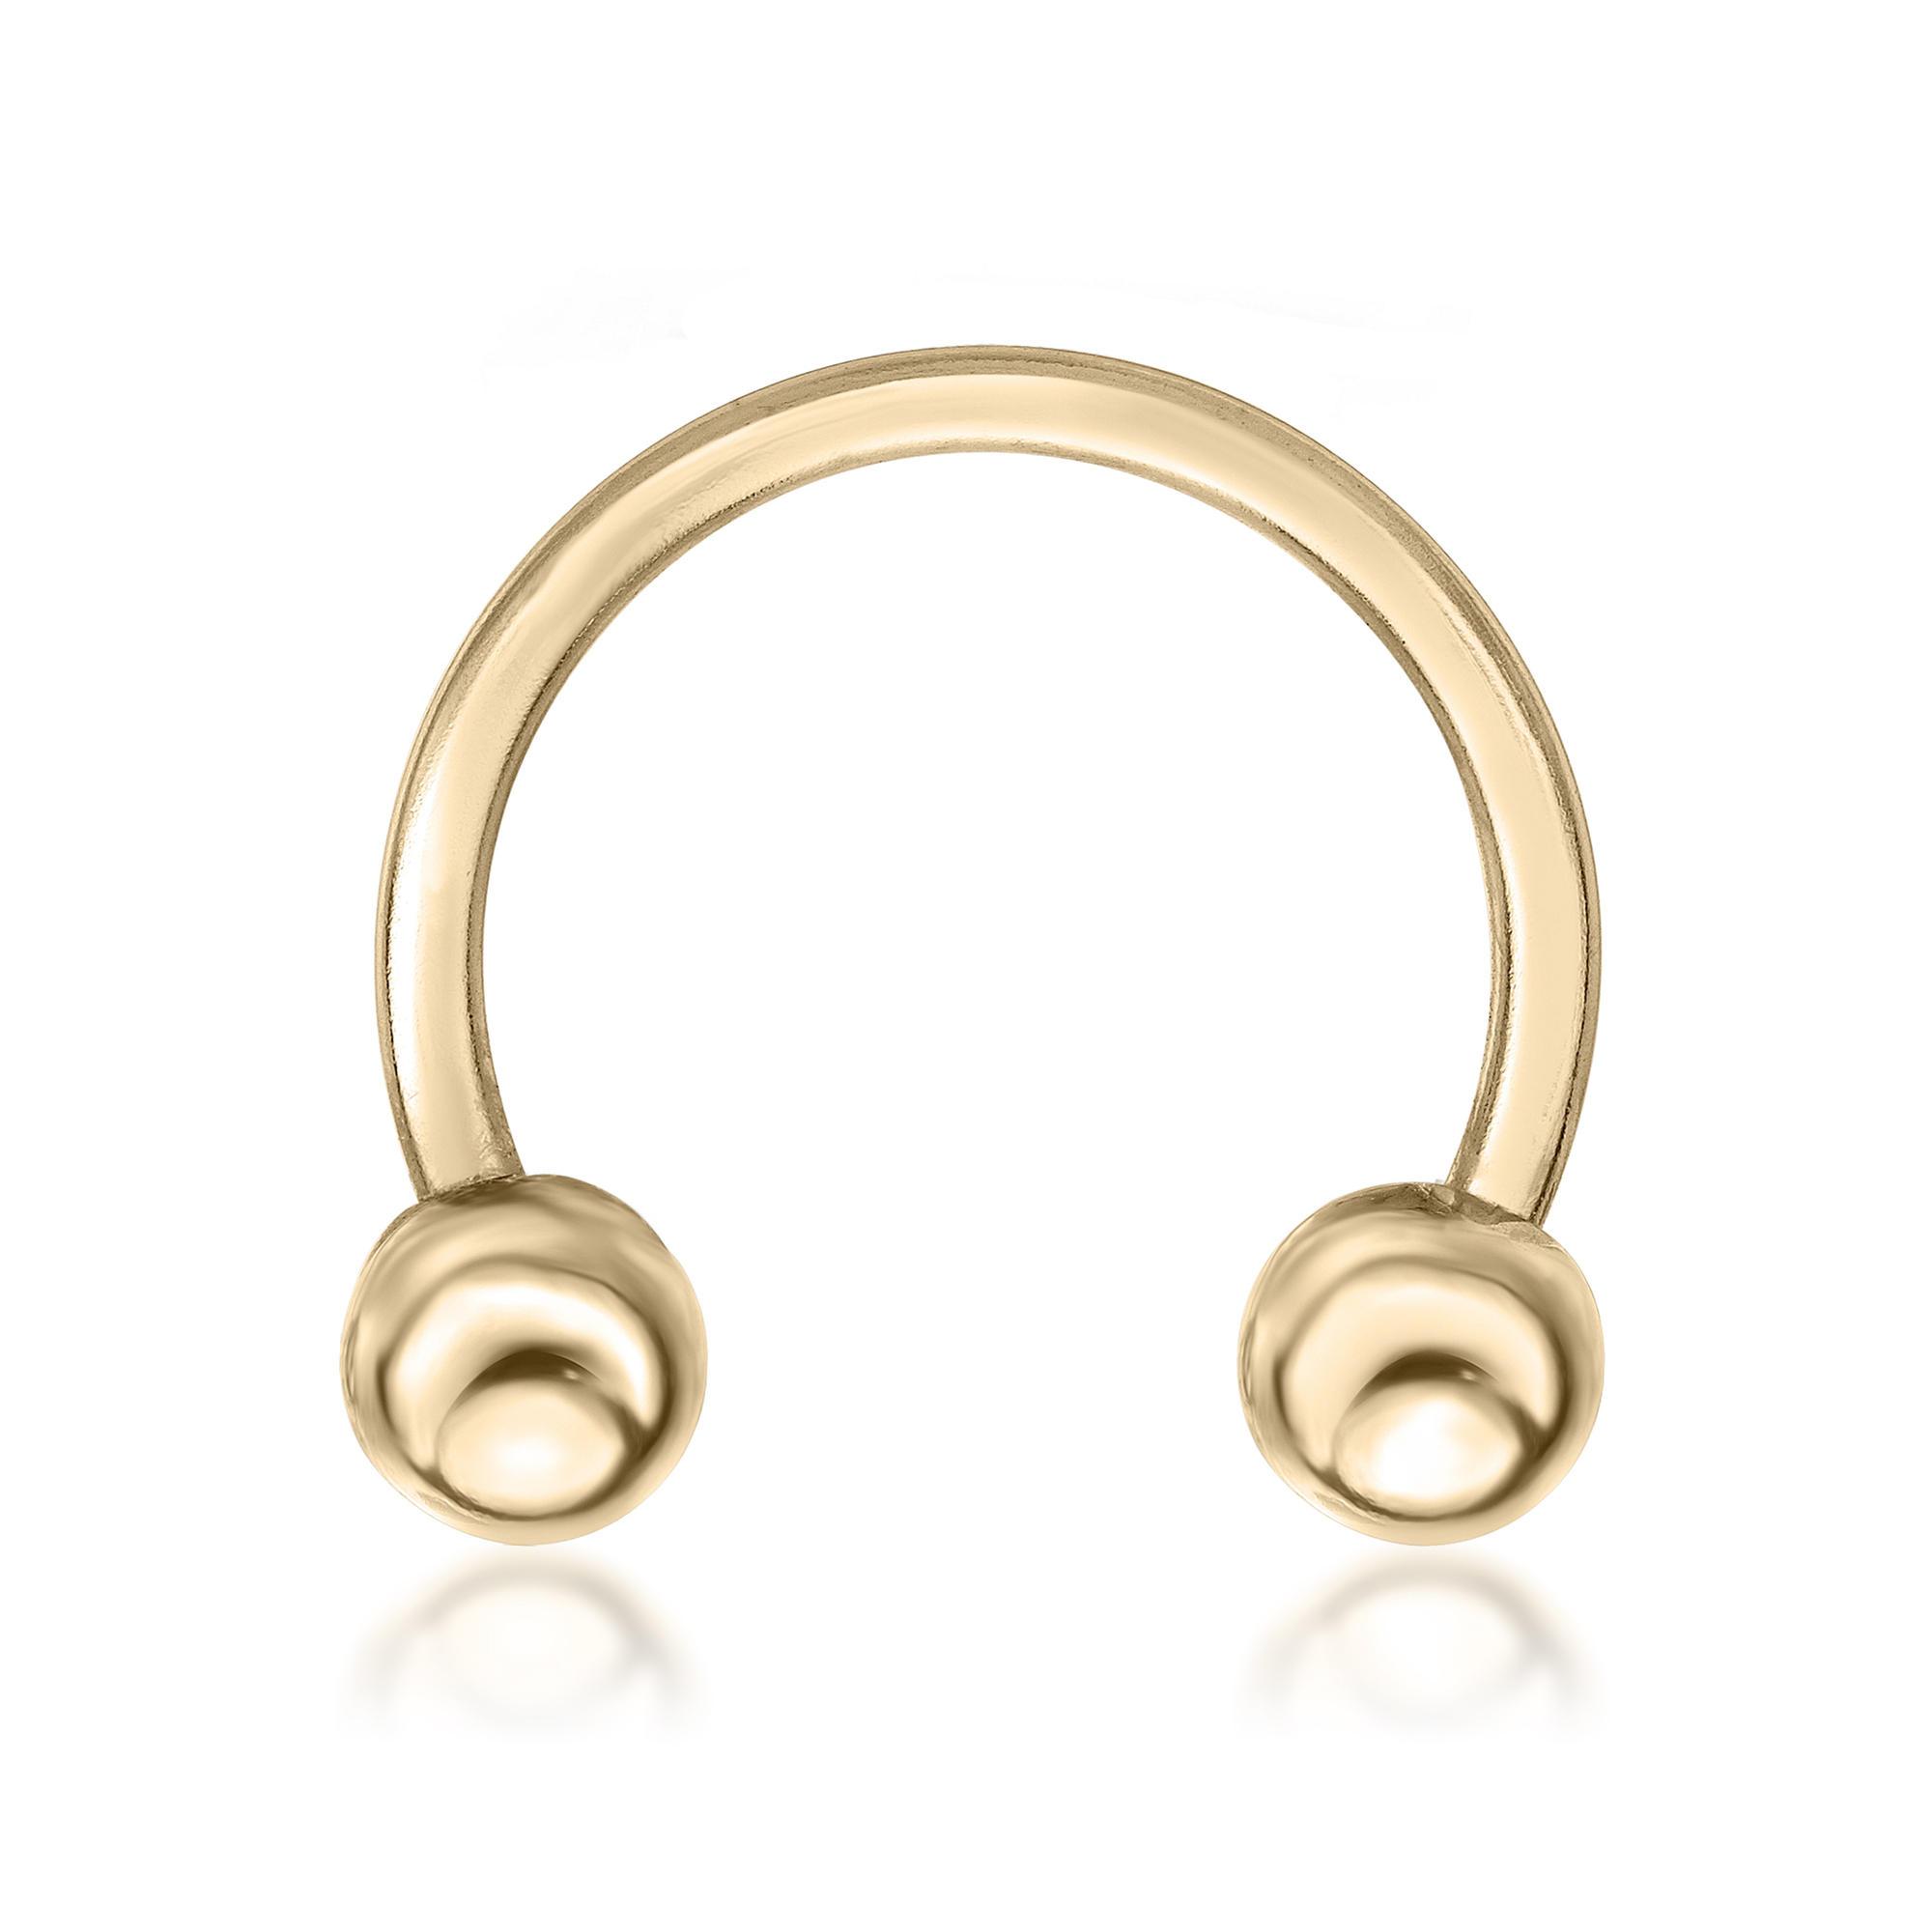 Women's Horseshoe Universal Hoop Ring, 14K Yellow Gold, 1/2 Inches, 14 Gauge | Lavari Jewelers